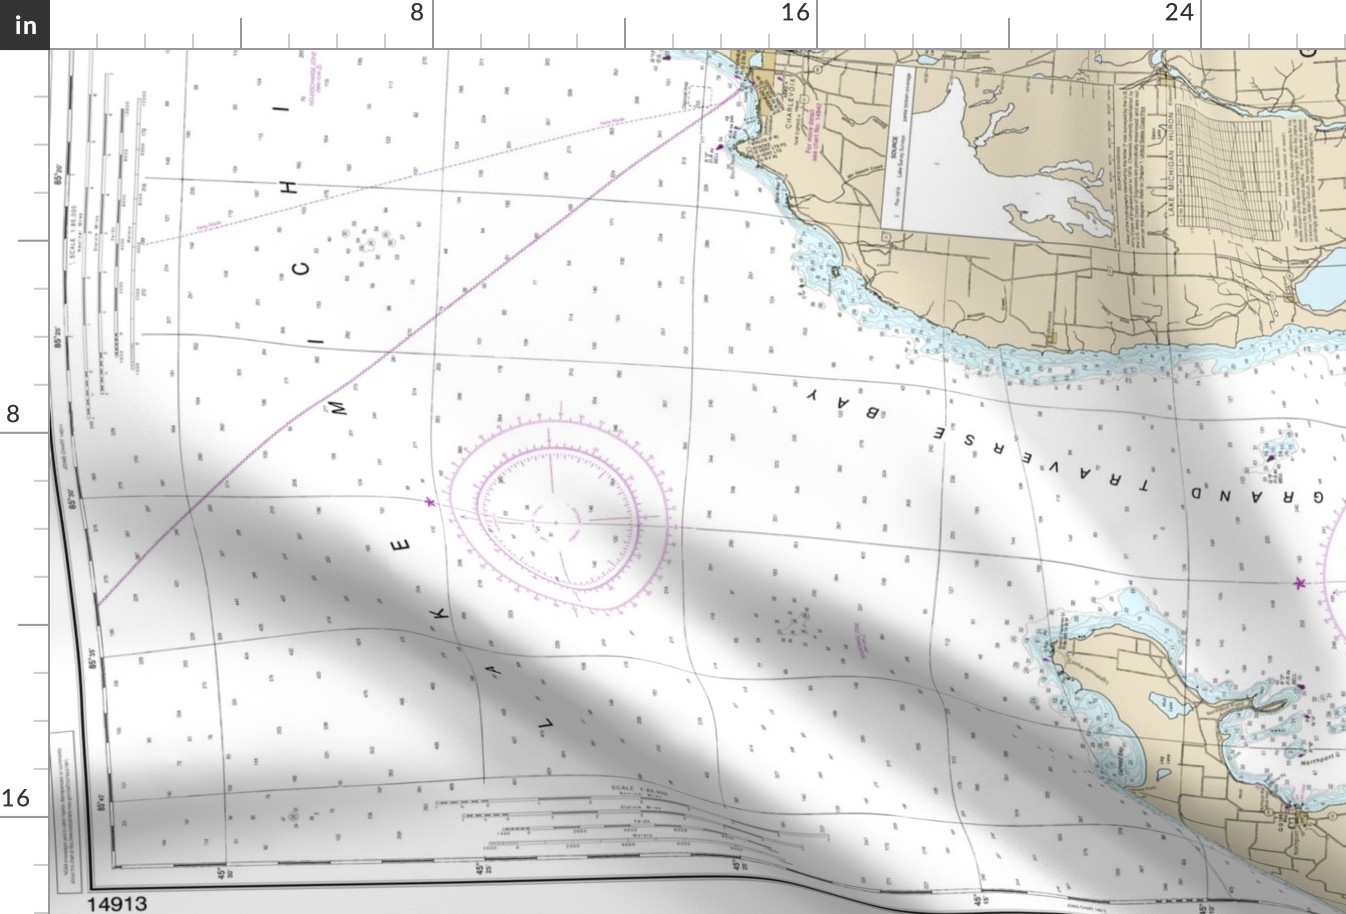 NOAA nautical chart #14913 - Grand Traverse and Little Traverse bays, northern Lake Michigan - 36x50.5" (fits a yard of narrow fabrics)